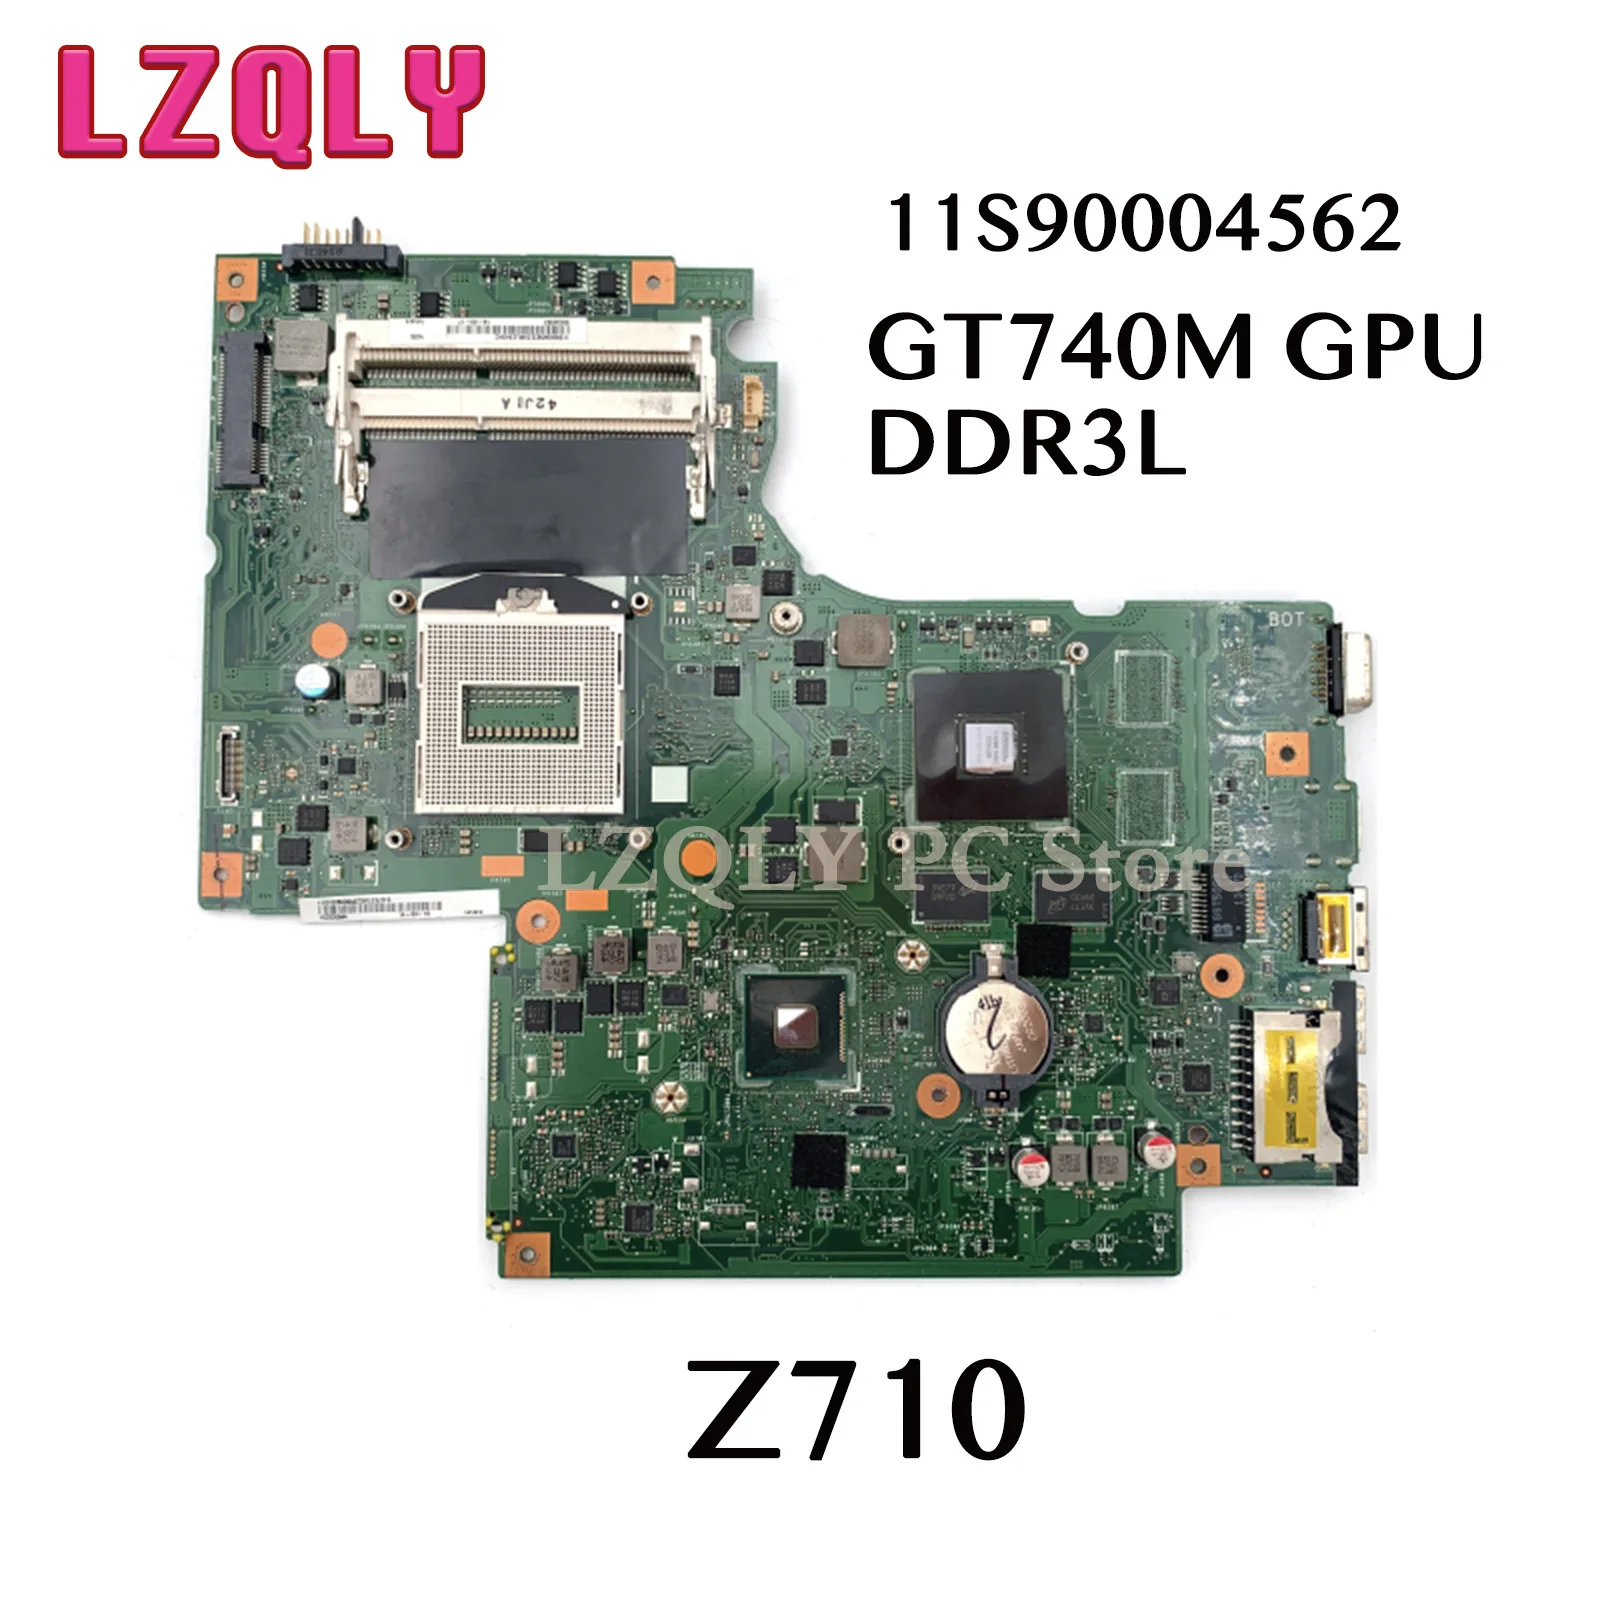 

LZQLY For Lenovo Ideapad Z710 DUMB02 11S90004562 Laptop Motherboard GT740M GPU DDR3L MAIN BOARD Full Test